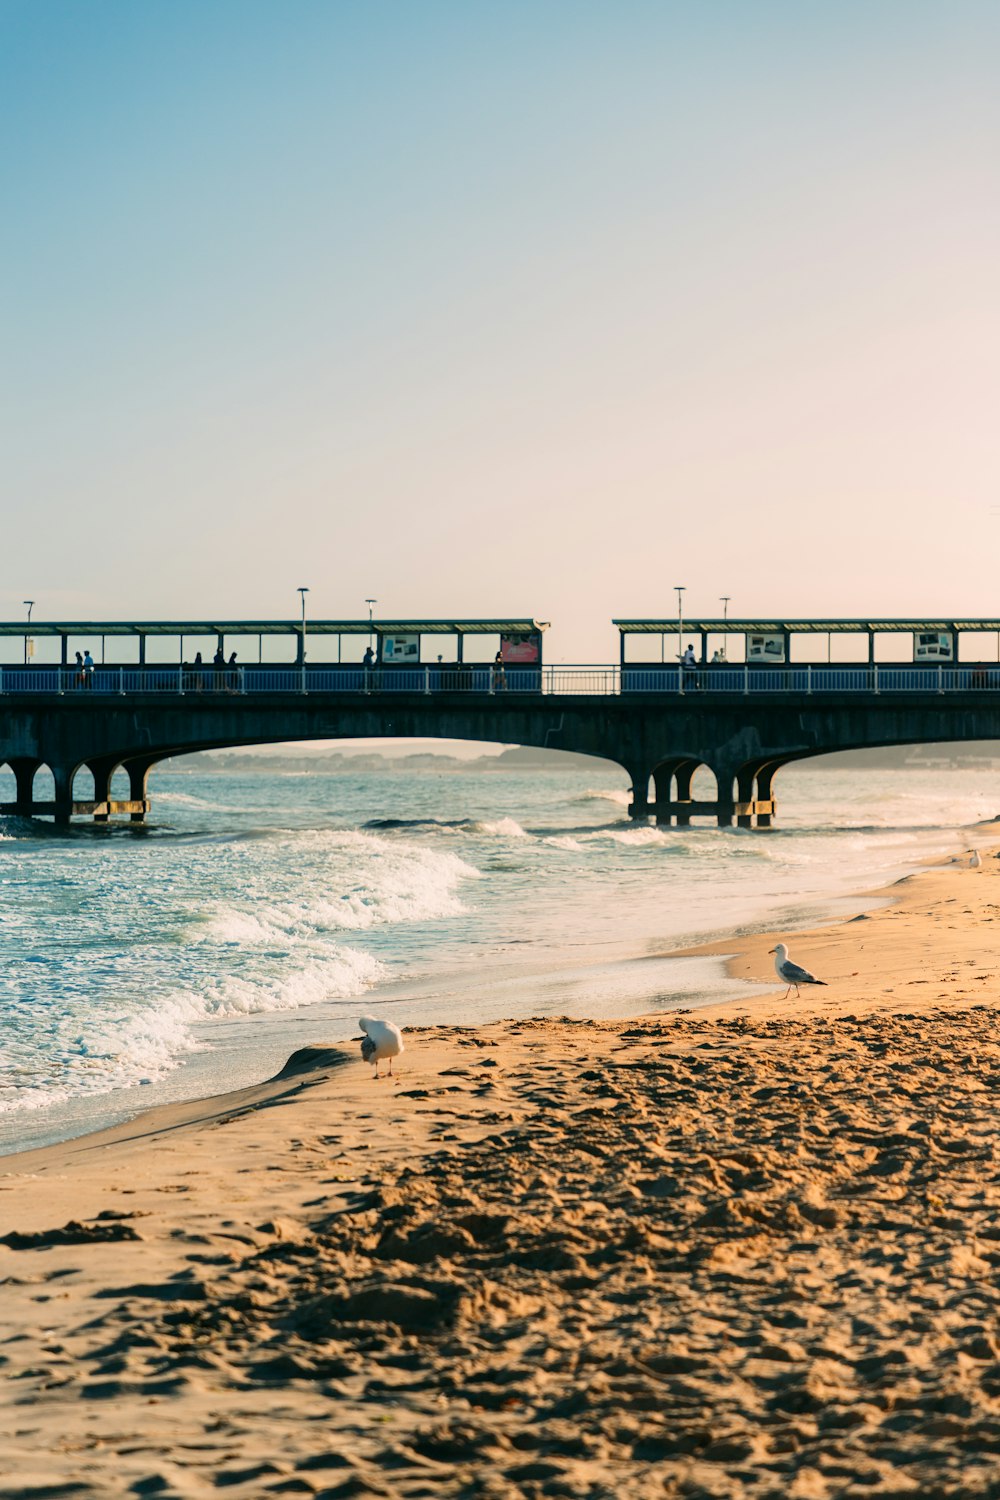 a train on a bridge over a beach